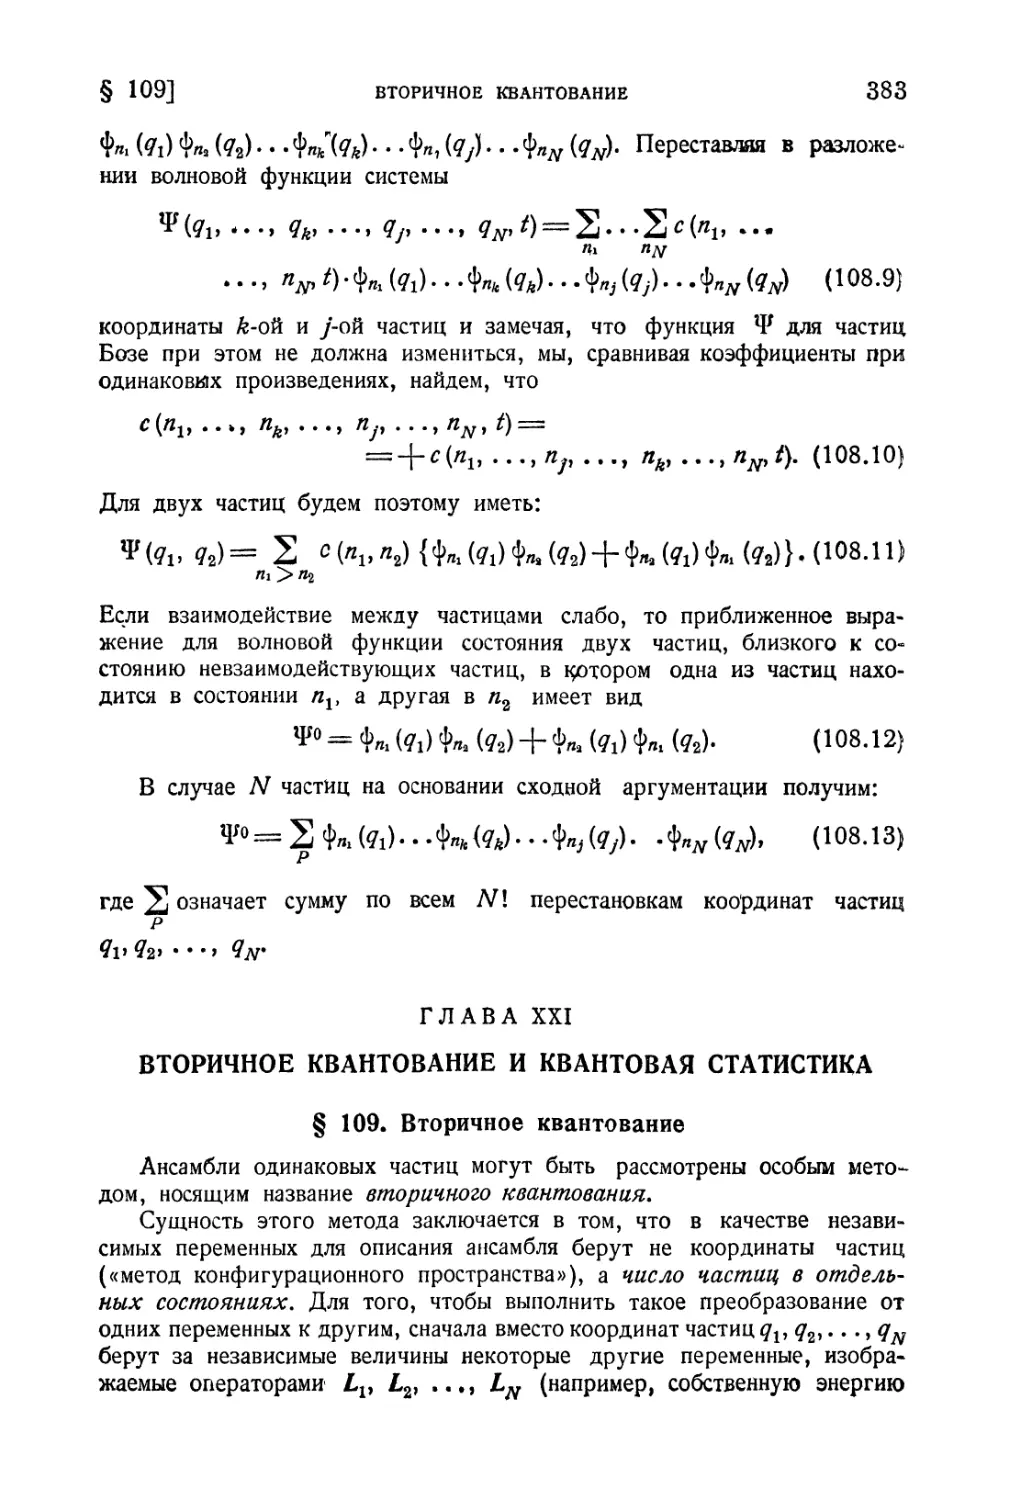 Глава XXI. Вторичное квантование и квантовая статистика
§ 109. Вторичное квантование